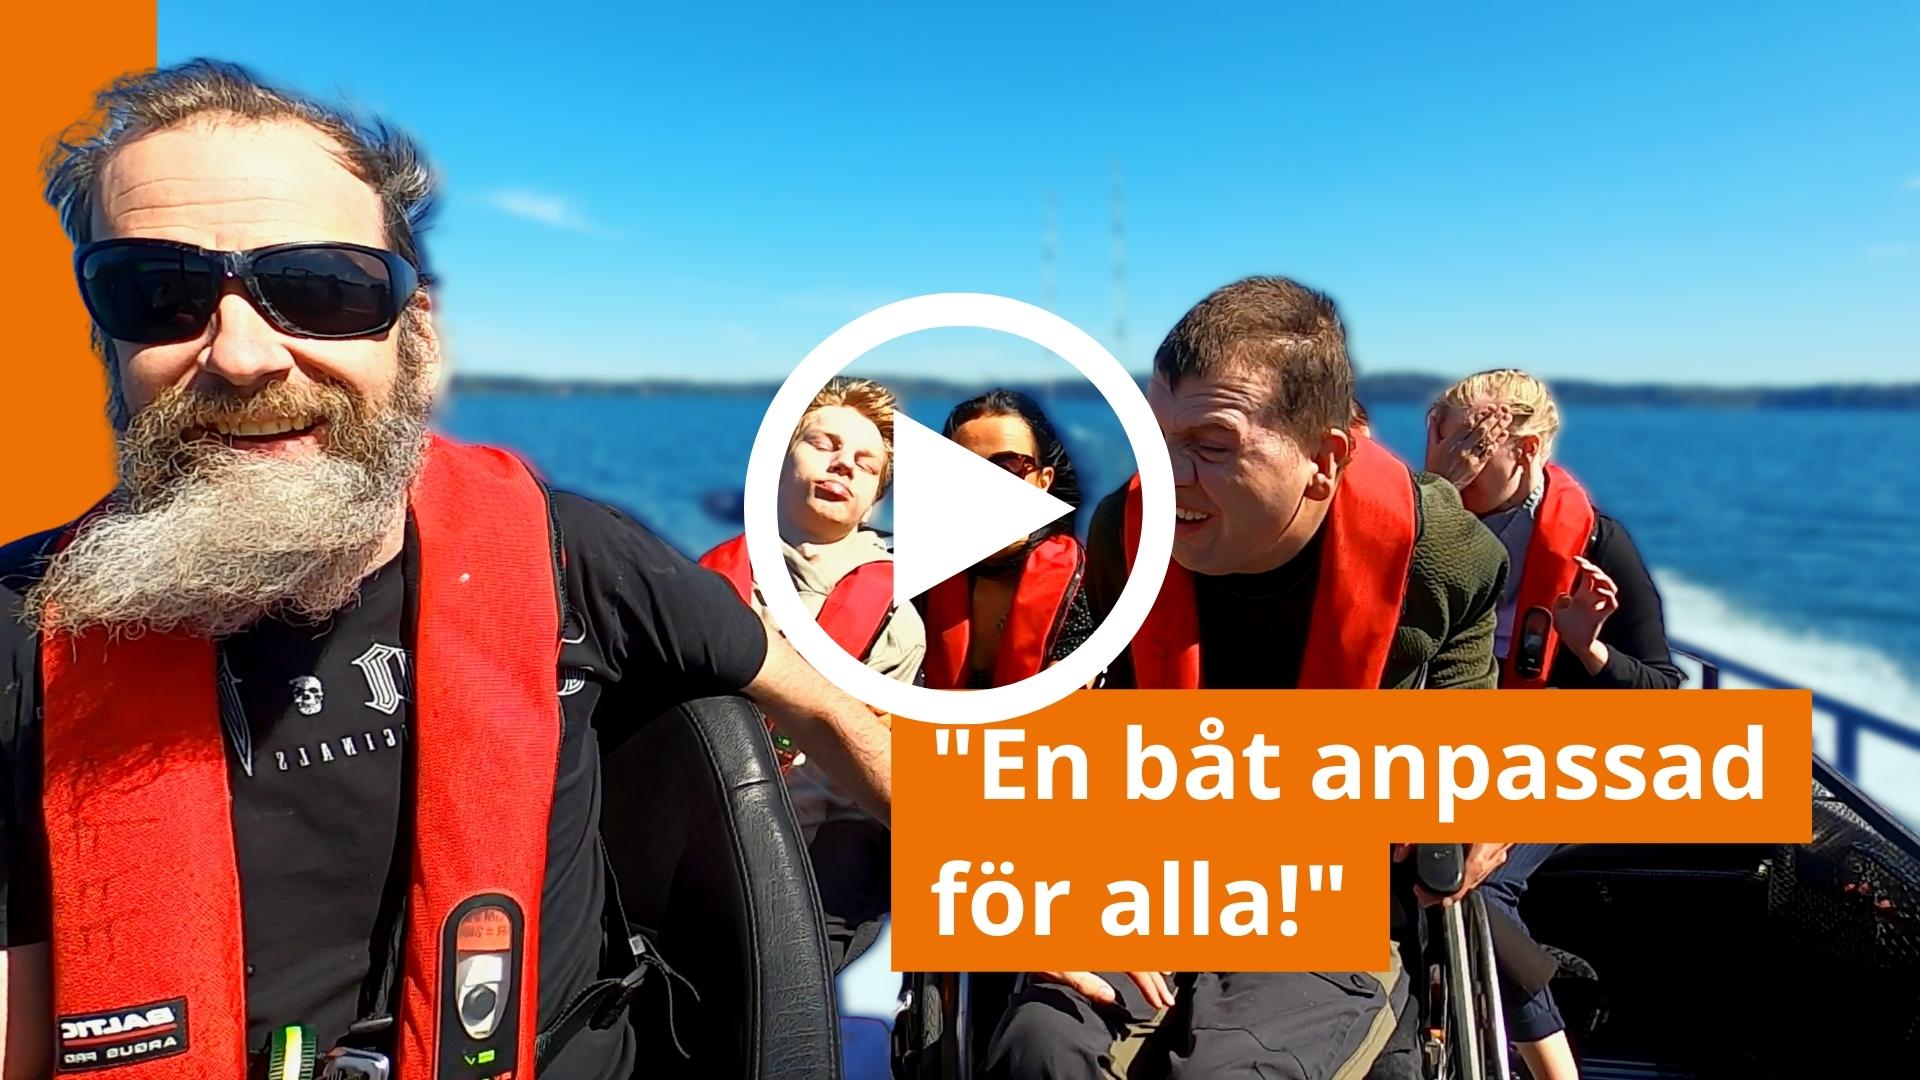 Omslag till YouTube-video. Fisketur i Norrtälje.